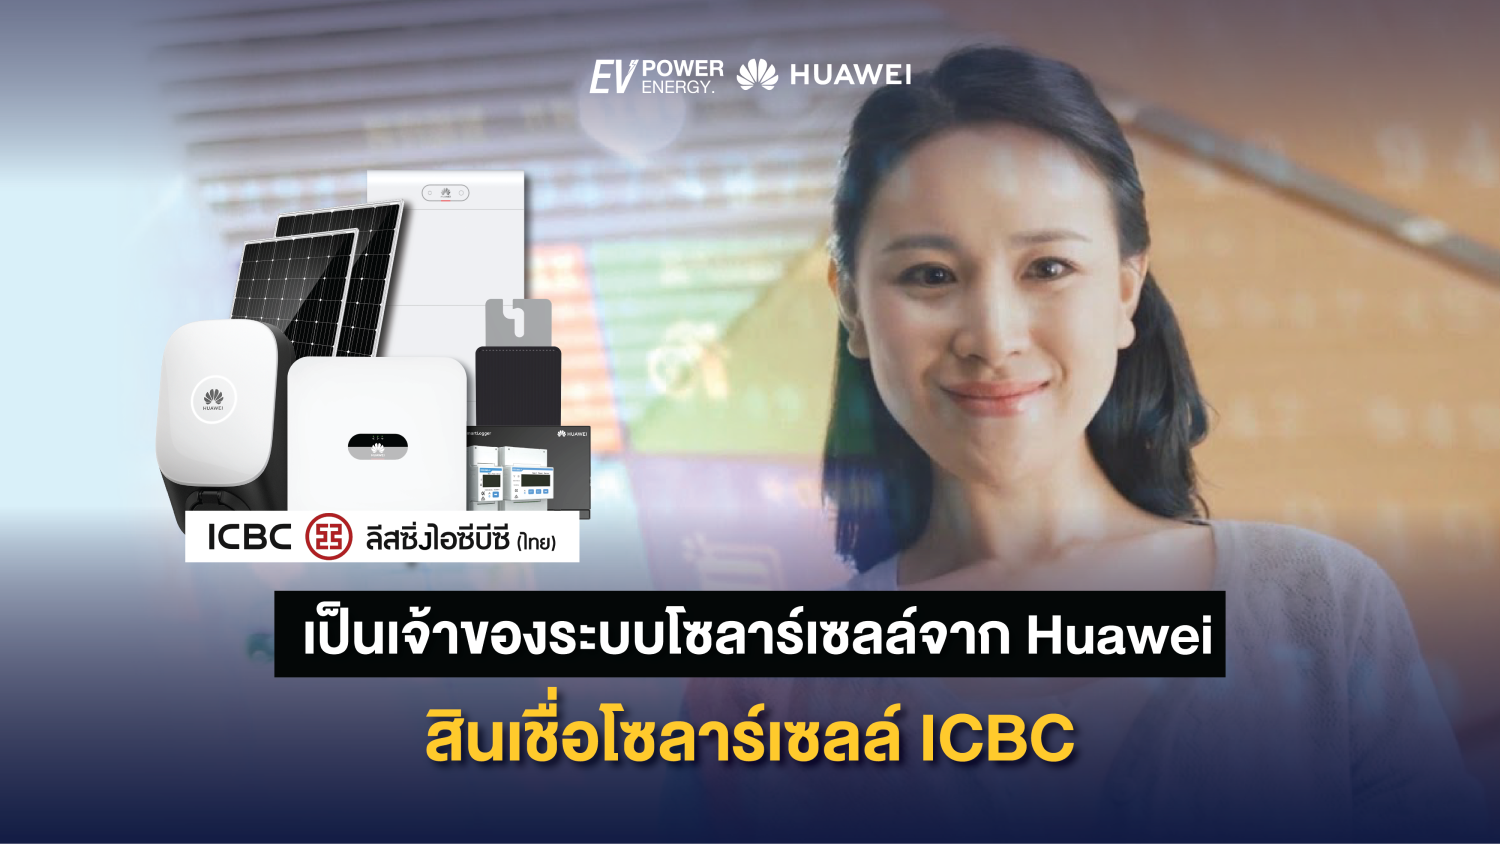 เป็นเจ้าของระบบโซลาร์เซลล์จาก Huawei ด้วยสินเชื่อโซลาร์เซลล์ ICBC 1